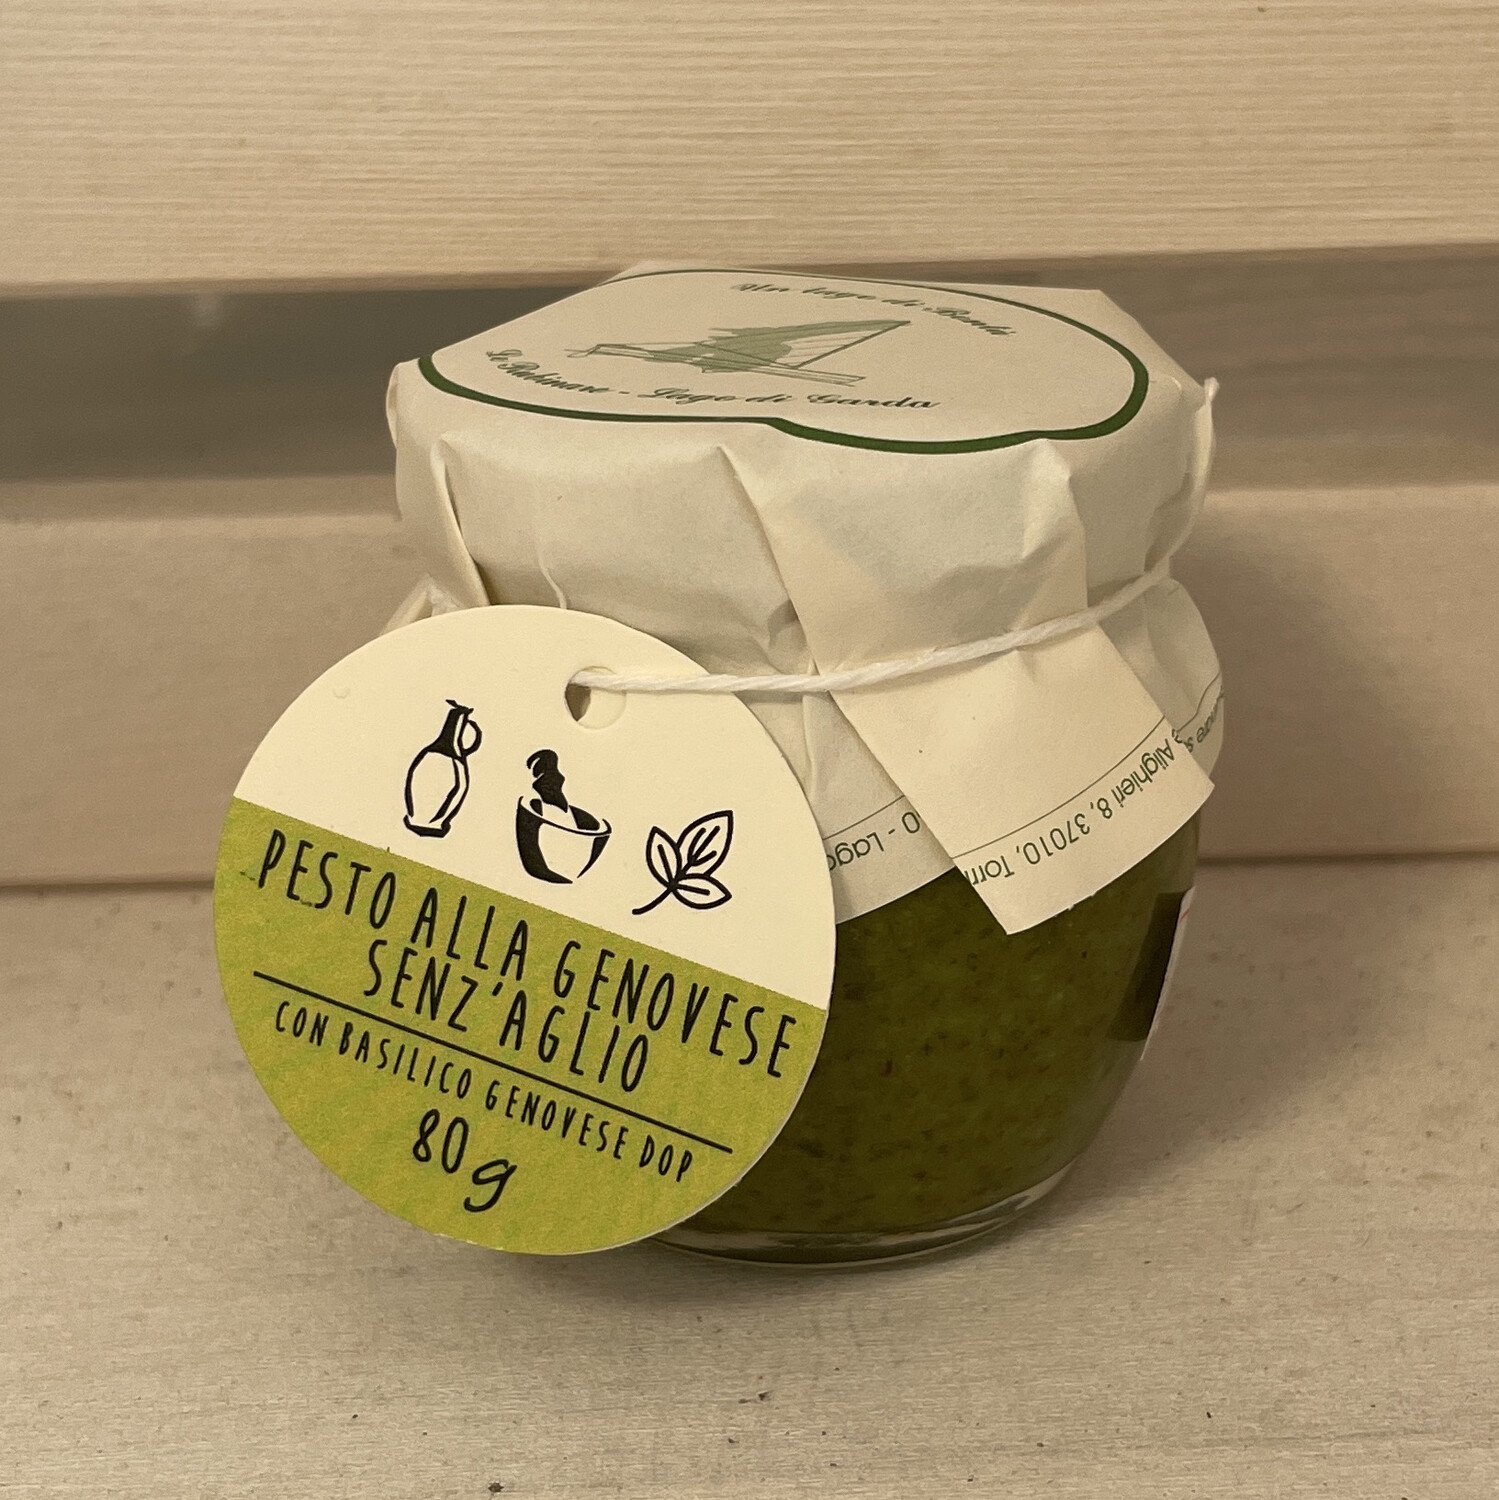 Pesto alla genovese senz aglio con basilico dop 80 g